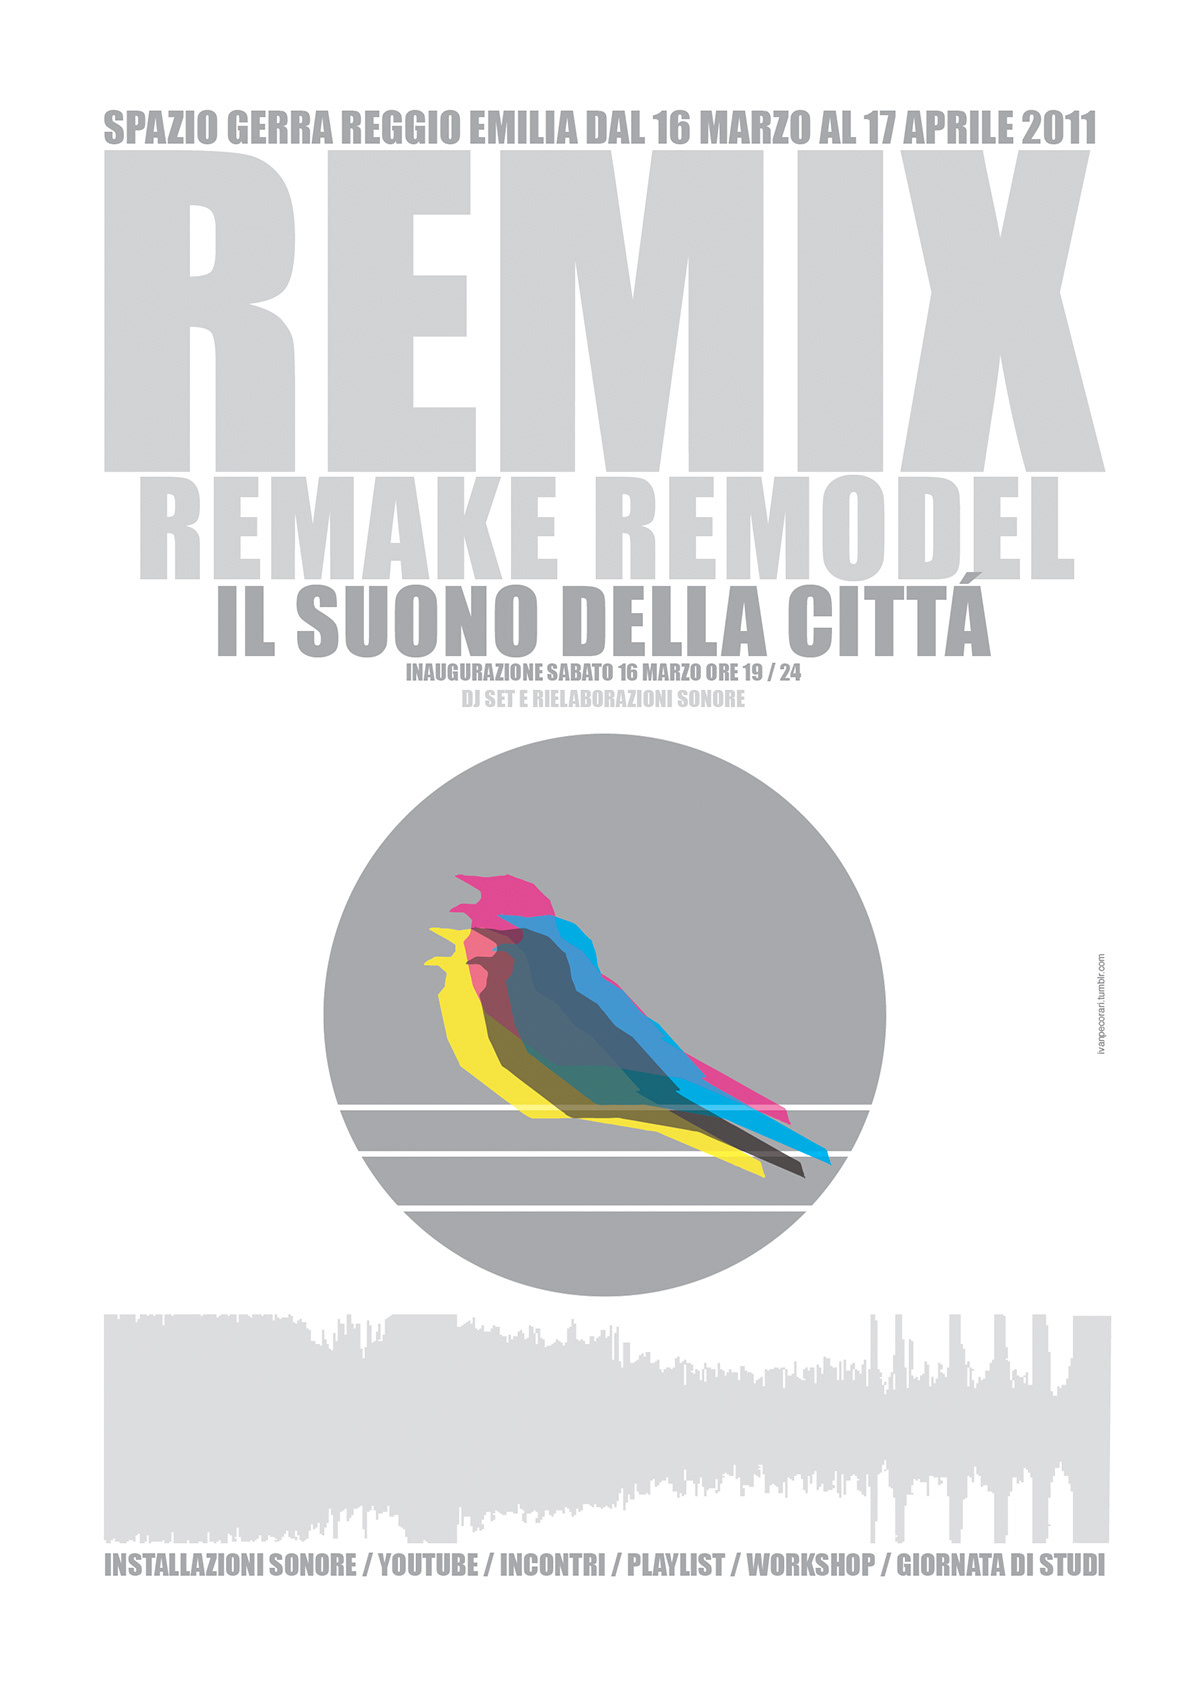 ehxibition design  Interaction Design soundscape  remix ivan pecorari  reggio emilia creative  installation